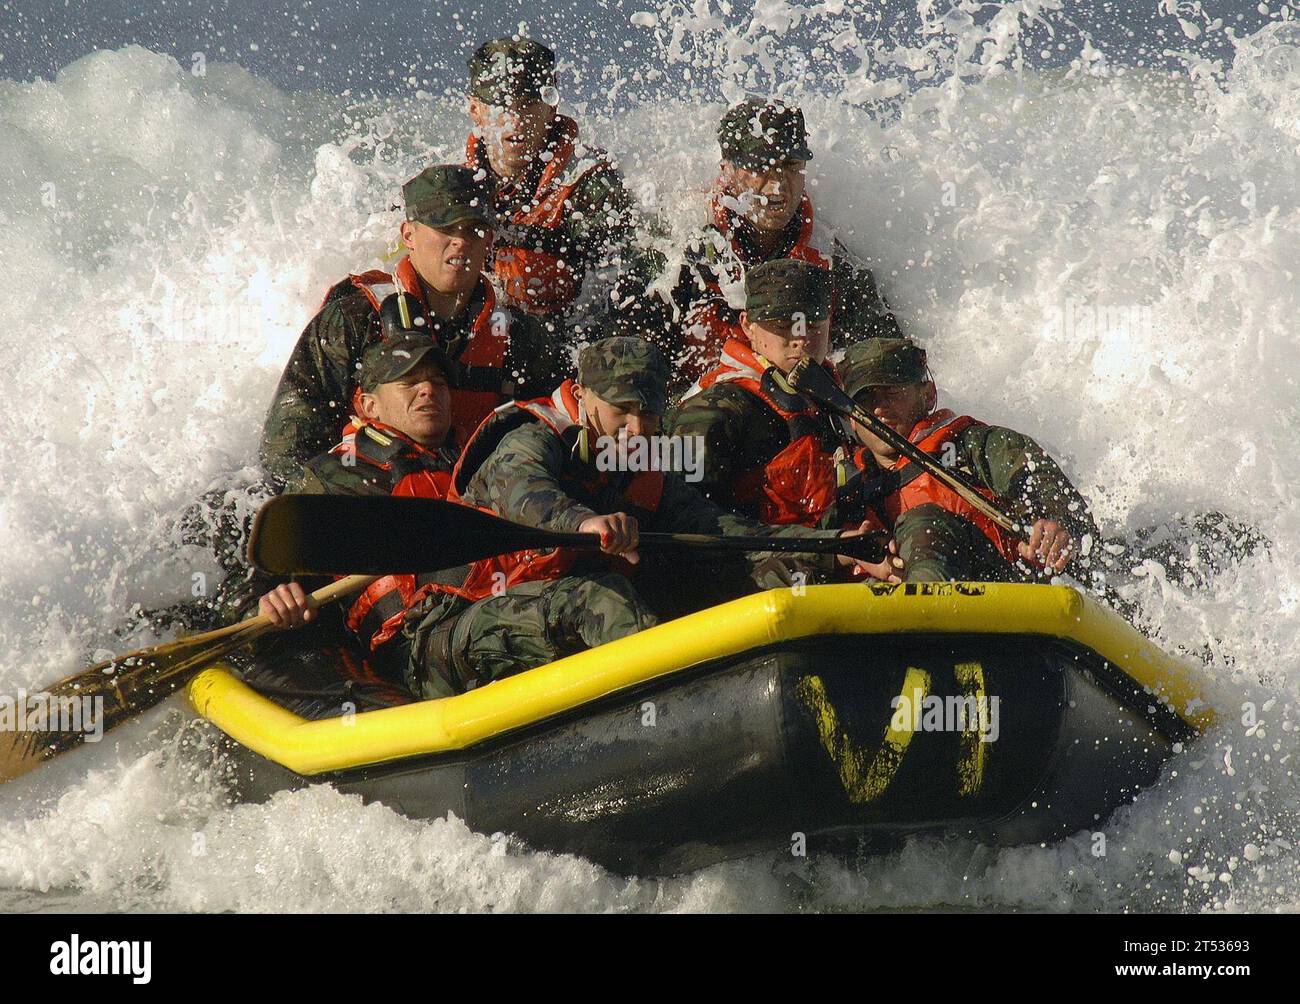 0702025169H-476 CORONADO, Kalif (2. Feb. 2007) - Grundschüler der Unterwasserabbruch/SEAL (BUD/S) fahren auf ihrem aufblasbaren Boot mit einer Welle. Die Surfpassage fördert die Teamarbeit unter den Mitgliedern der Bootsbesatzung. BUD/S-Studenten müssen 27 Wochen intensives Training absolvieren, um das Programm zu beenden, gefolgt von einem sechsmonatigen SEAL Qualification Training (SQT), bevor sie das Dreizack eines US Navy SEAL tragen können. US Navy Stockfoto